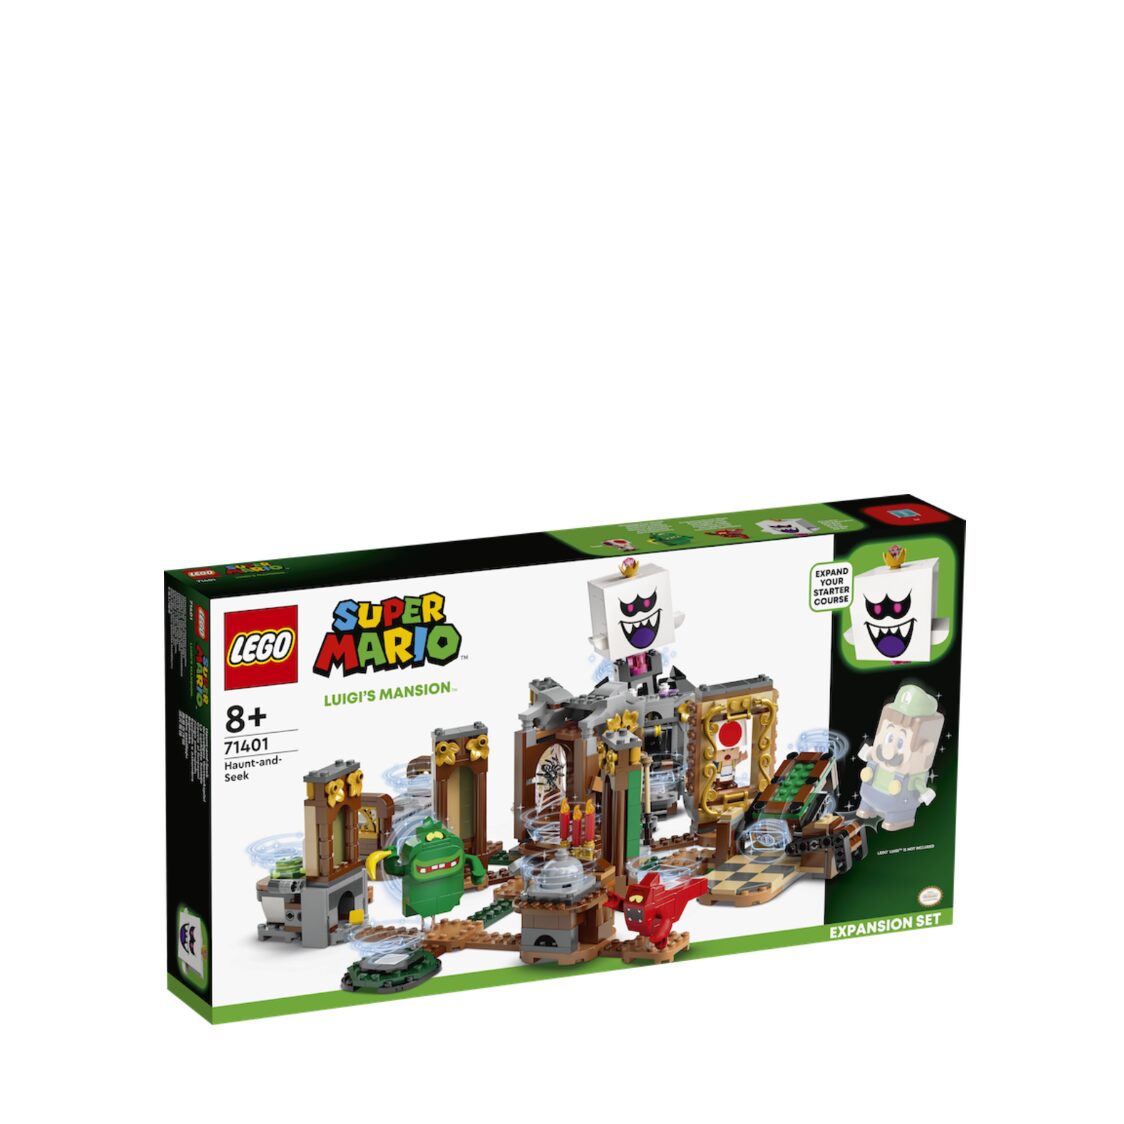 LEGO 71401 Super Mario Luigis Mansion Haunt-and-Seek Expansio